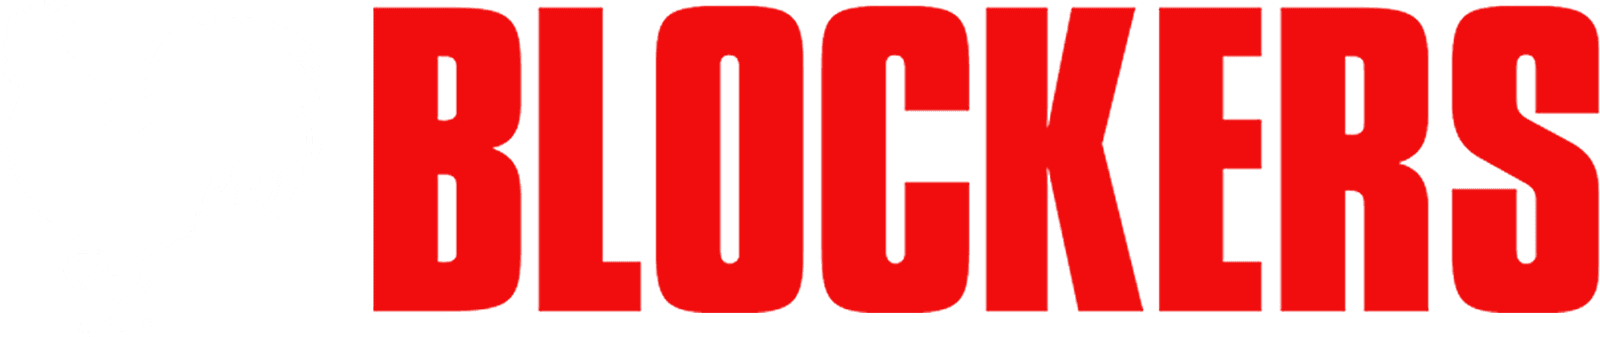 Blockers logo